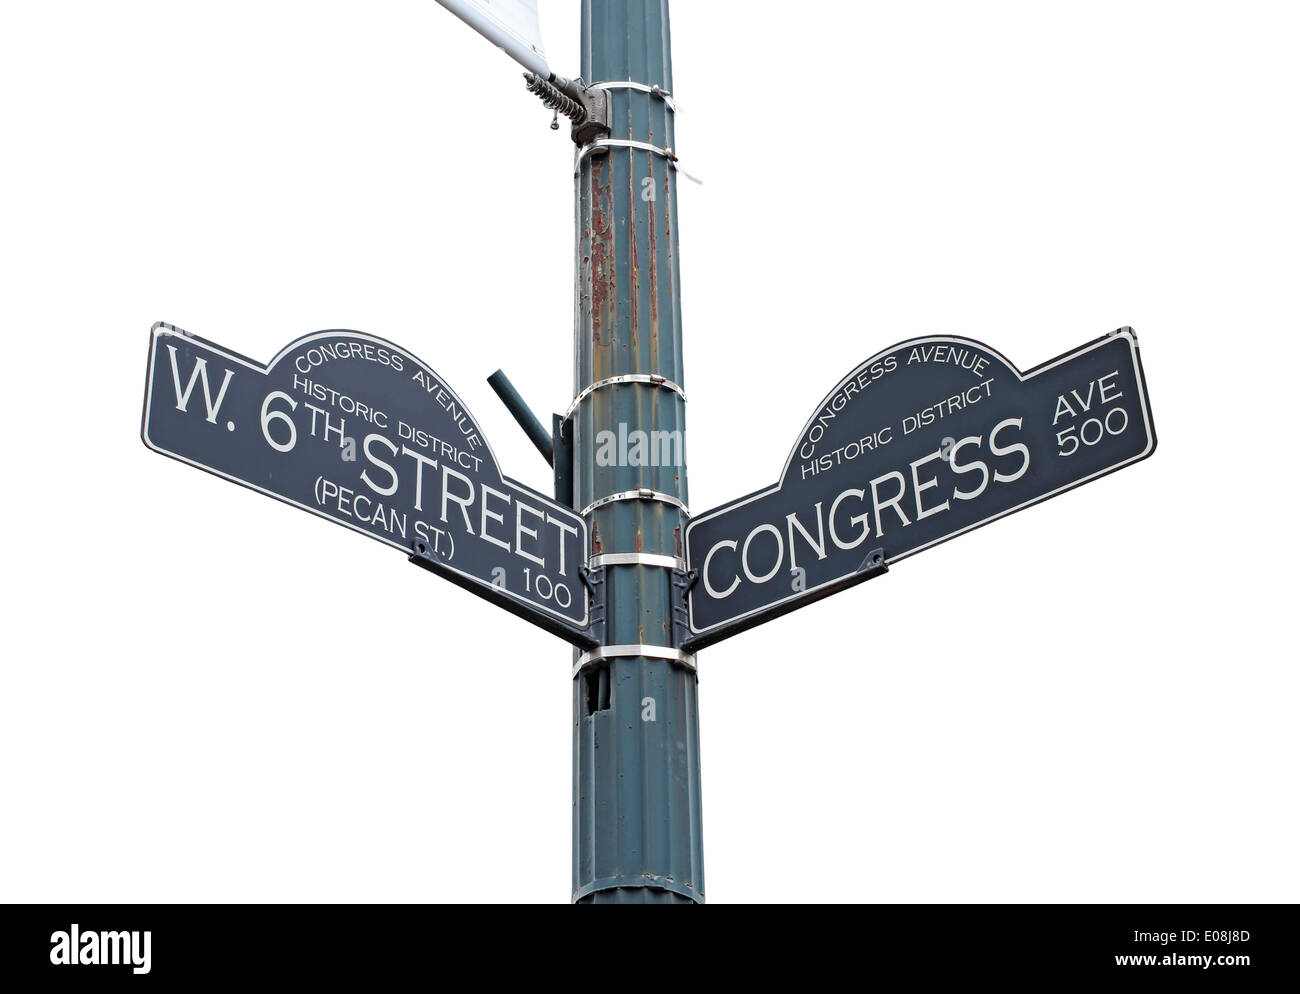 Zeichen für West 6th Street und Congress Avenue in Austin, Texas Stockfoto